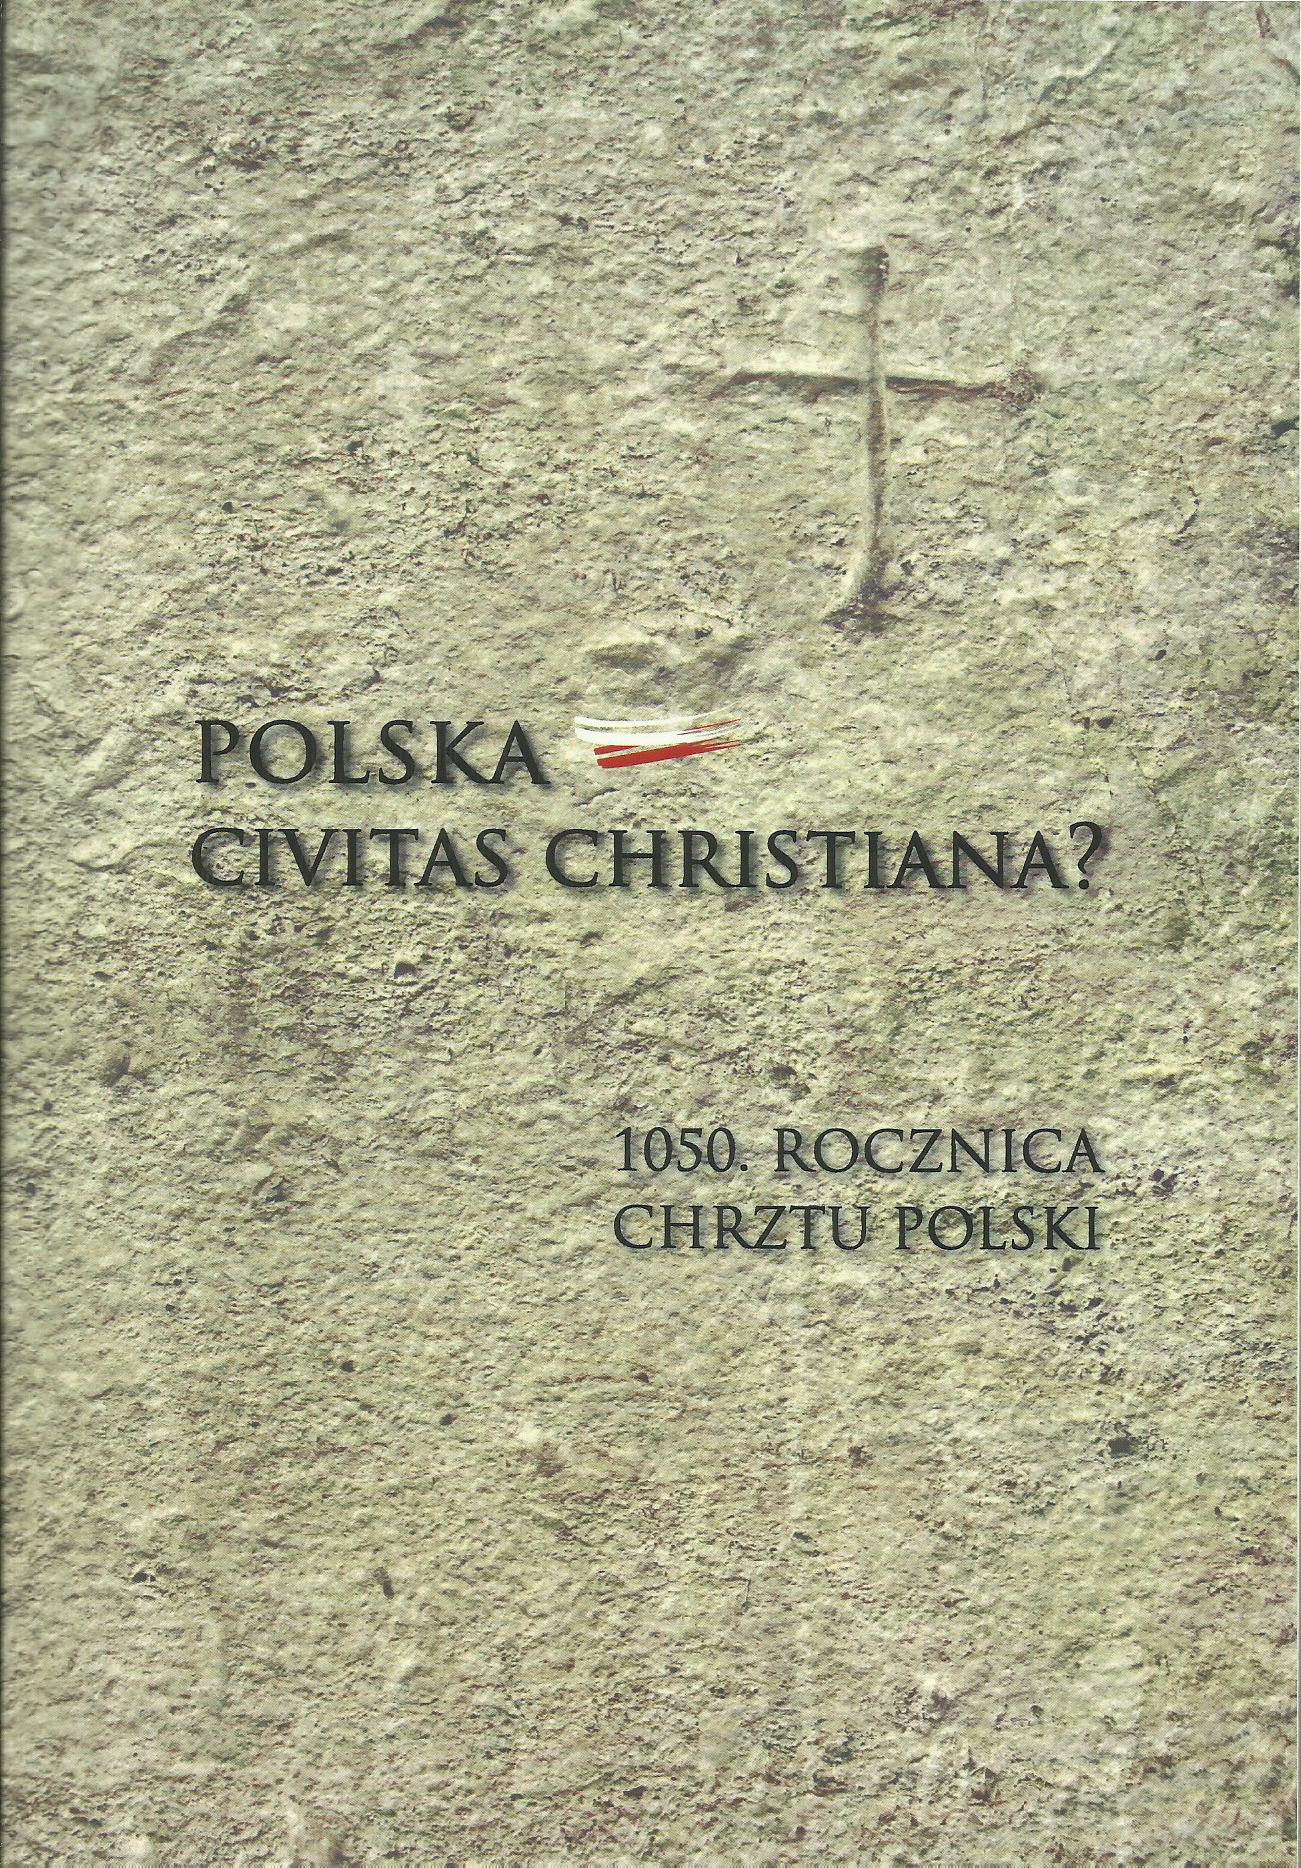 Polska-civitas christiana?